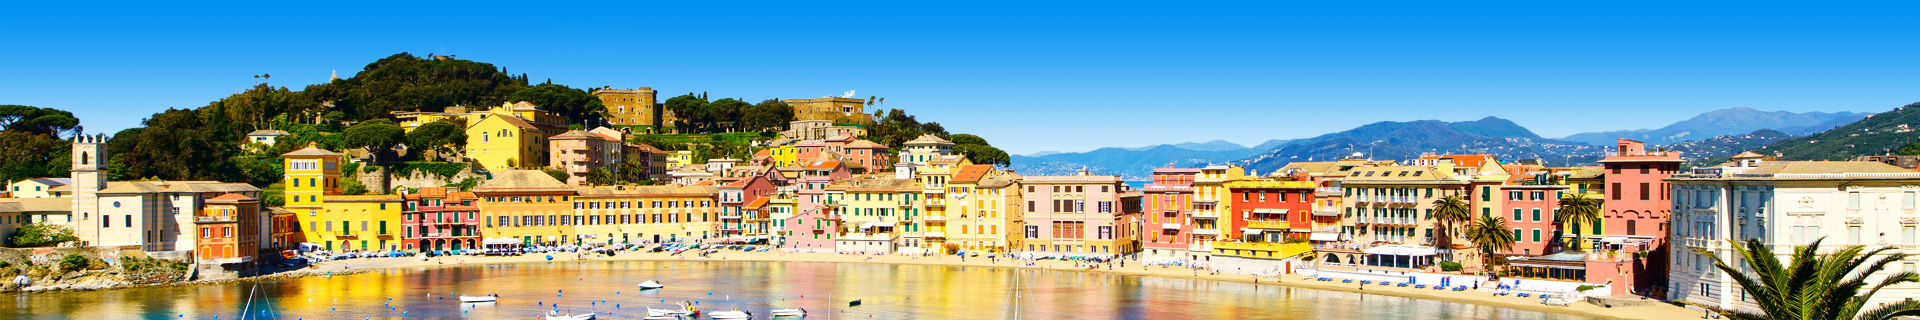 Uitzicht op de zee en een pittoresk stadje in Italië